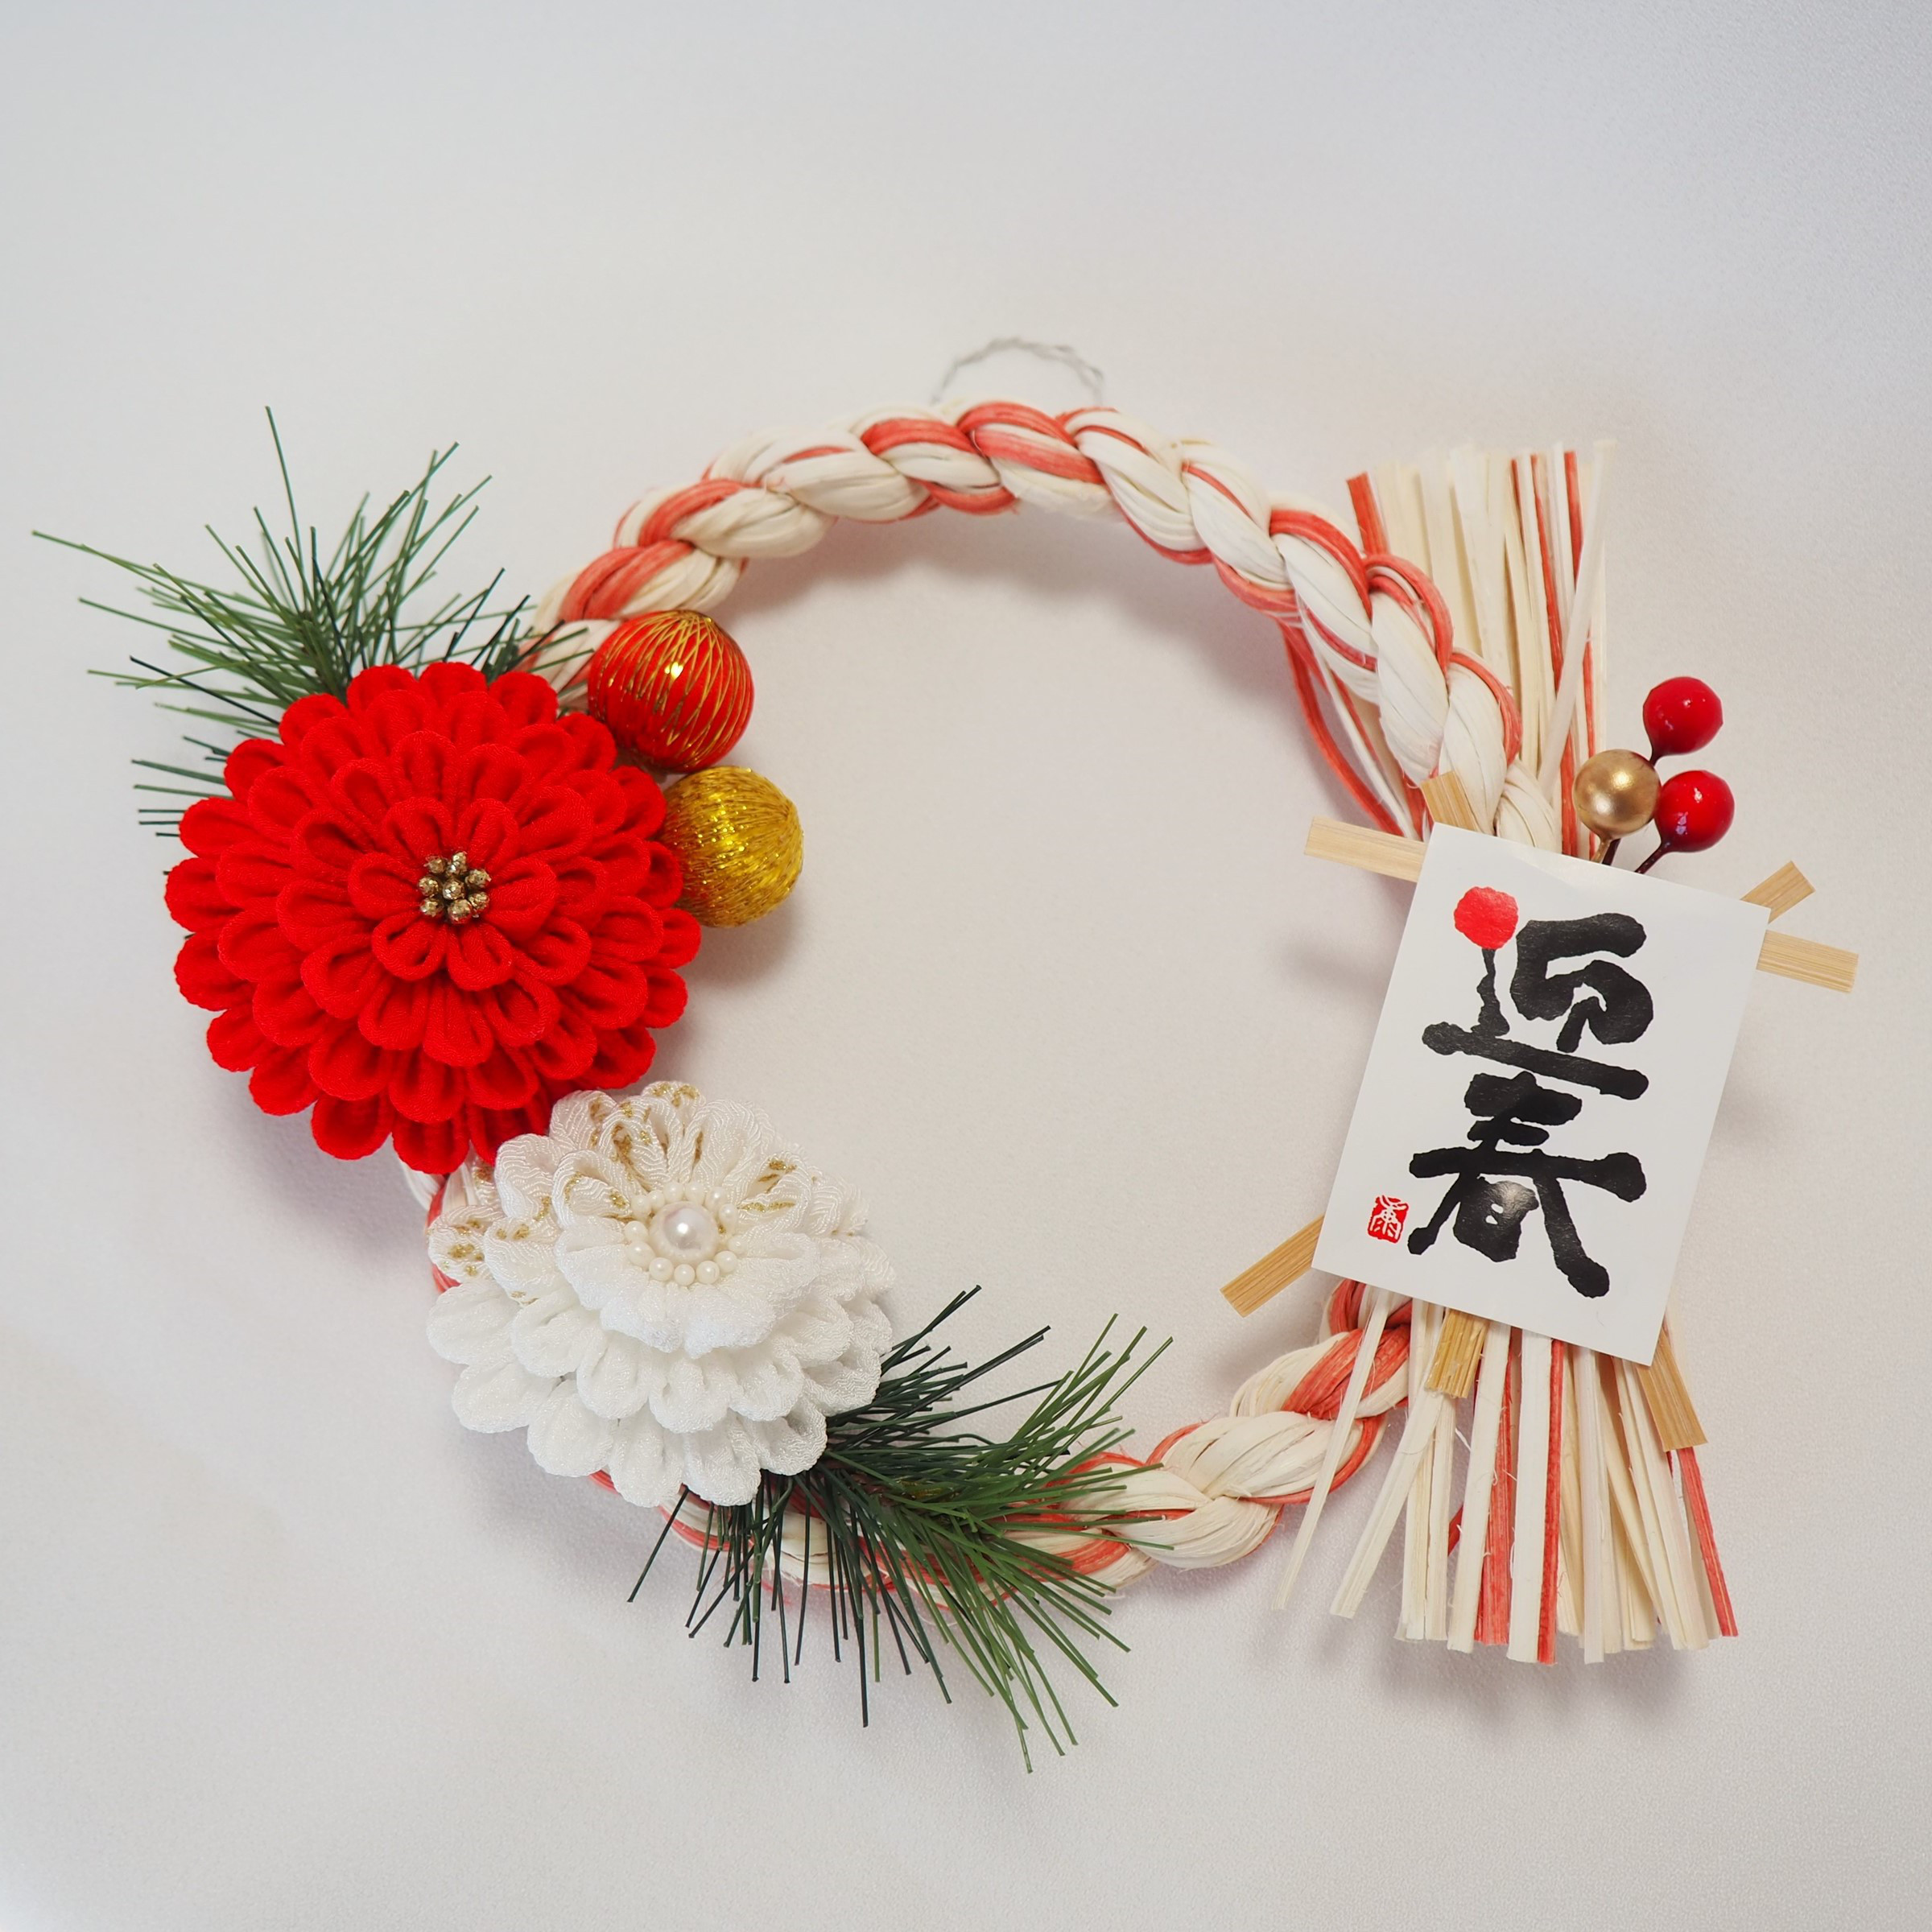 【お正月飾り】紅白の大輪花・ラタン飾りリース しめ縄・しめ飾り